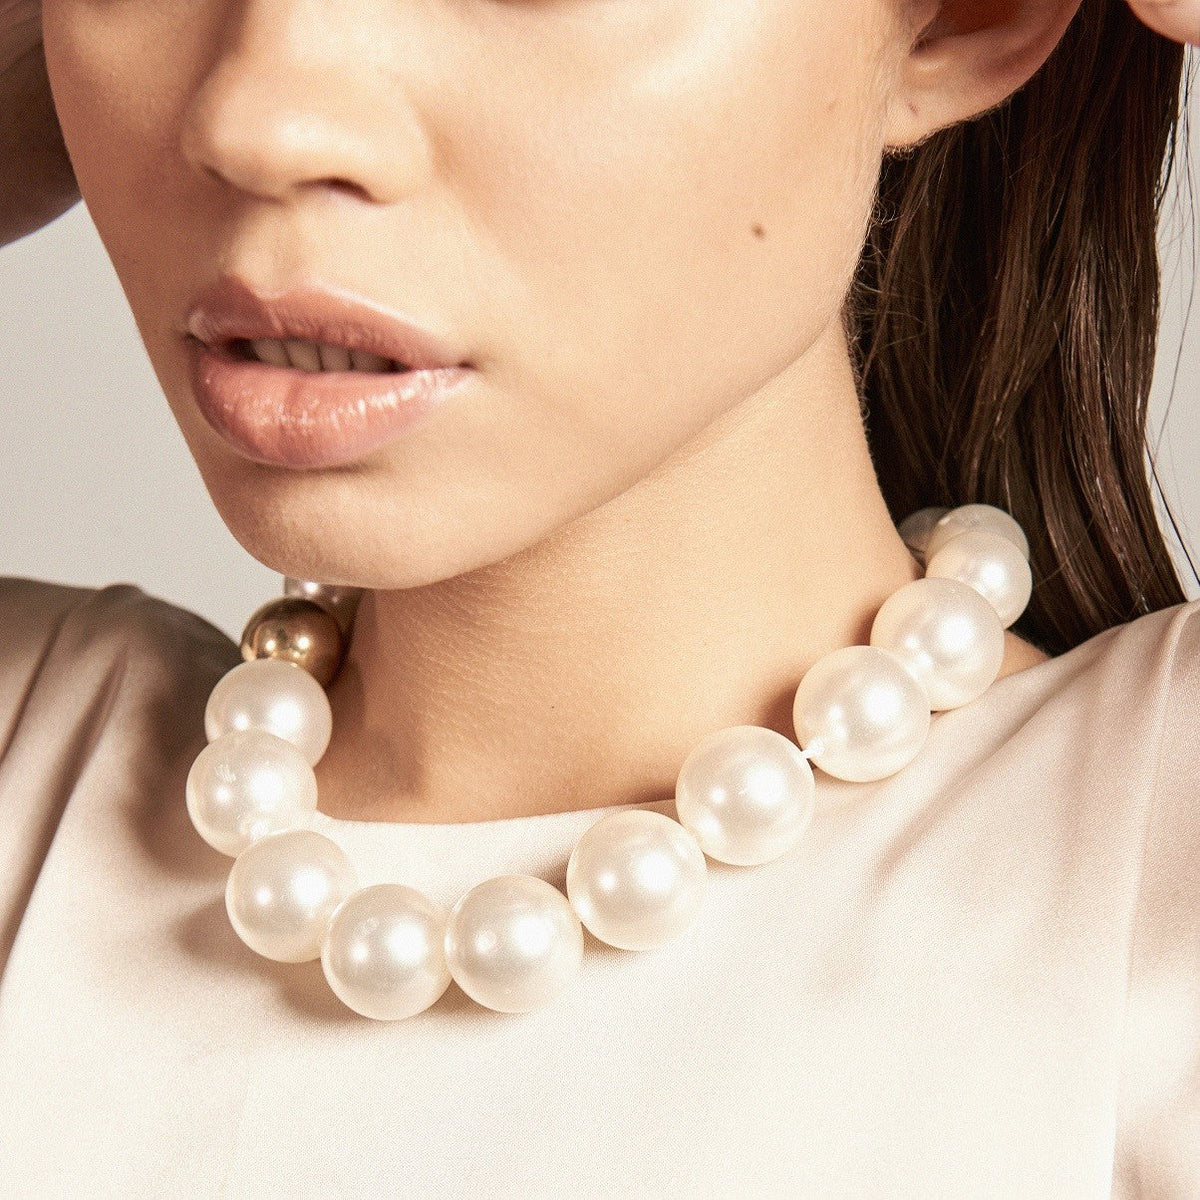 Necklace Perlas XL Detalle Dorado